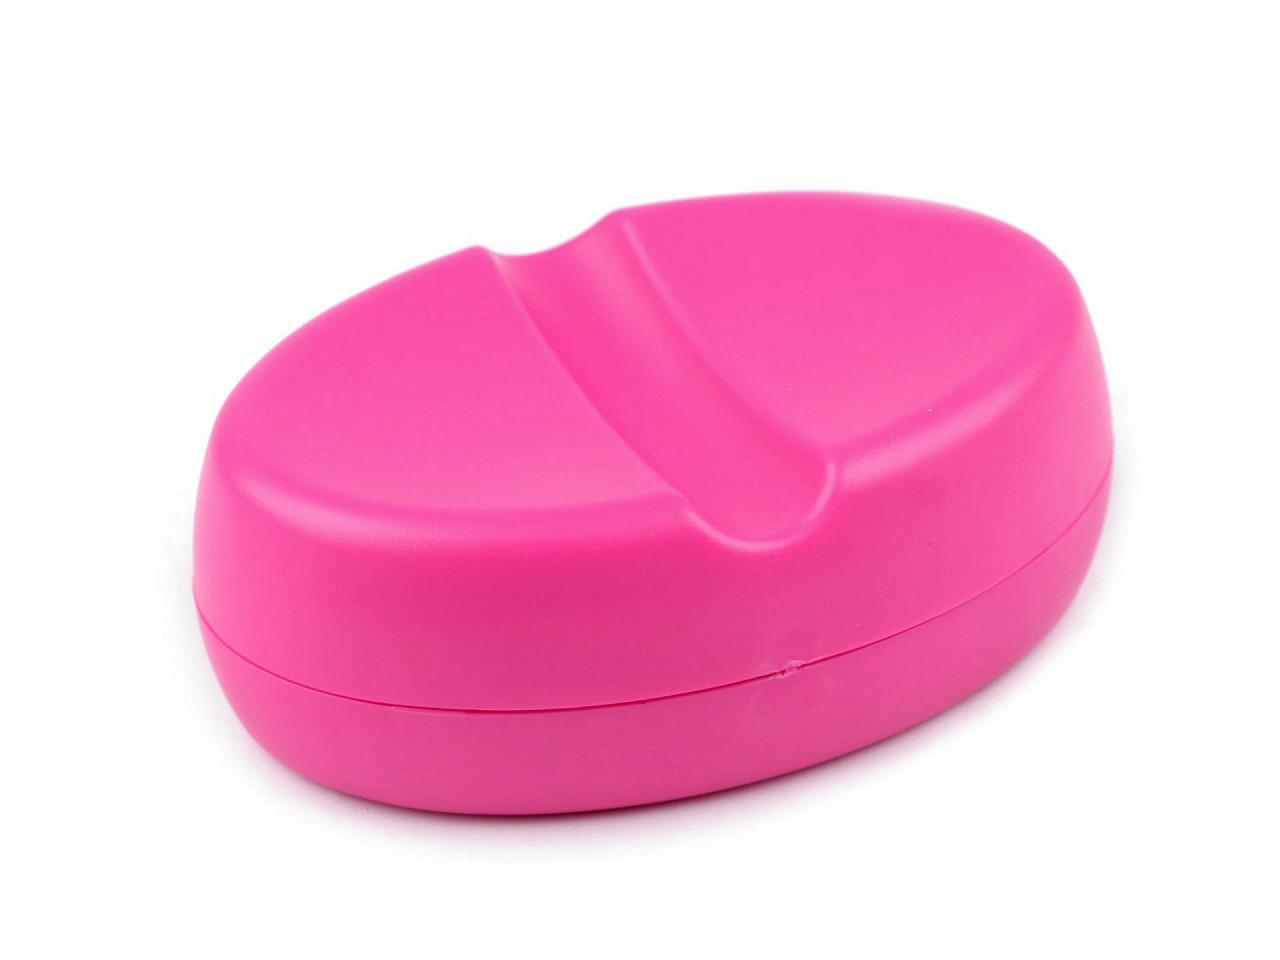 Magnetická podložka s krabičkou na špendlíky, jehly, barva 1 pink